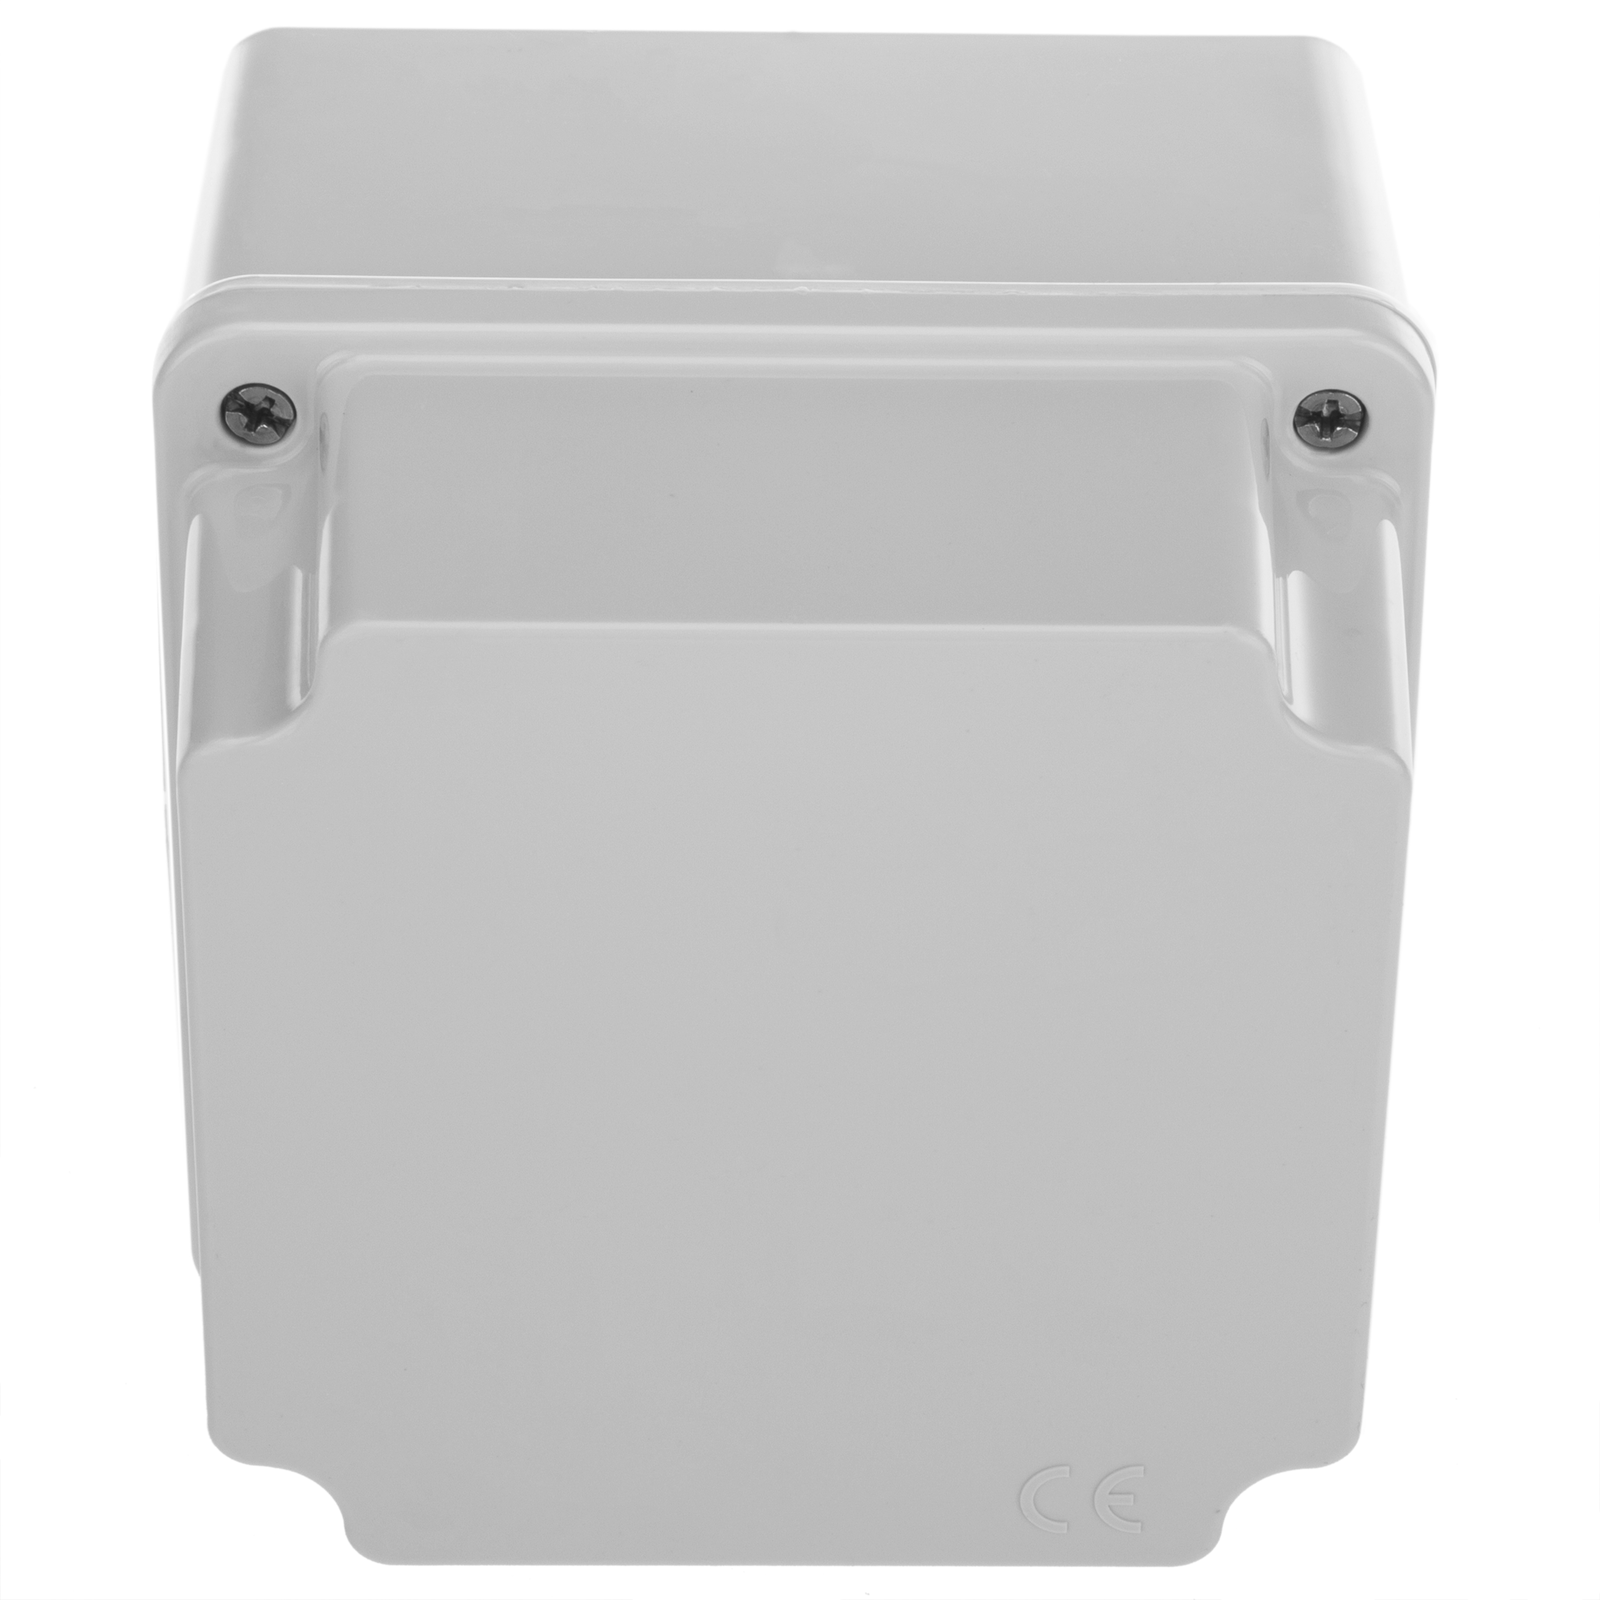 Caja estanca de superficie rectangular IP65 200x100x80mm - Cablematic